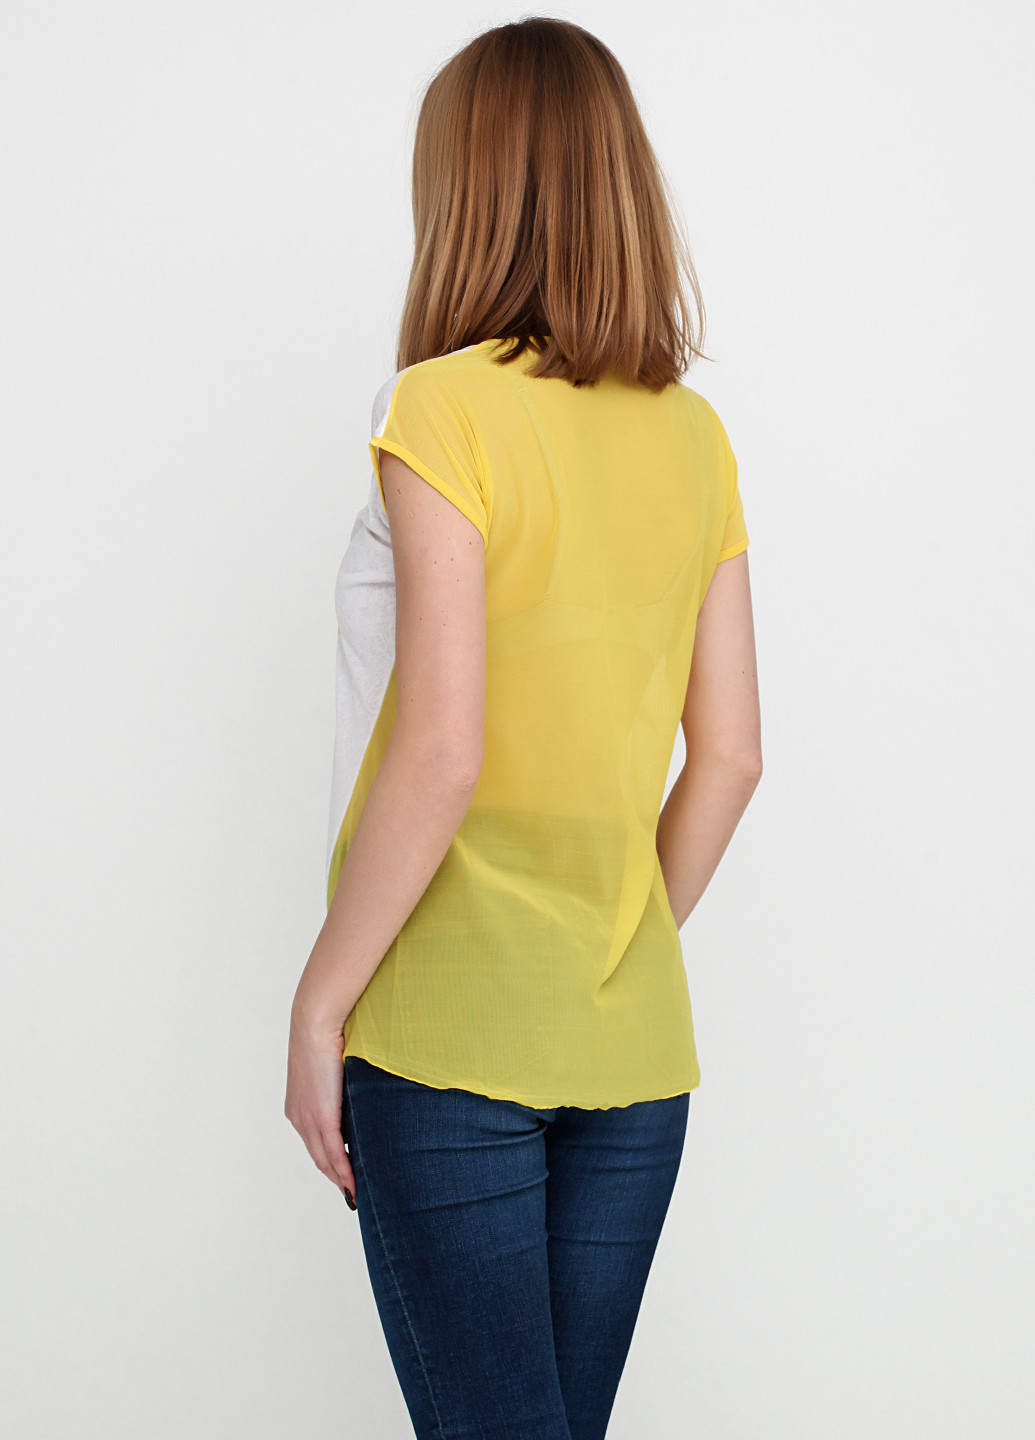 Желтая летняя футболка Mini Donno